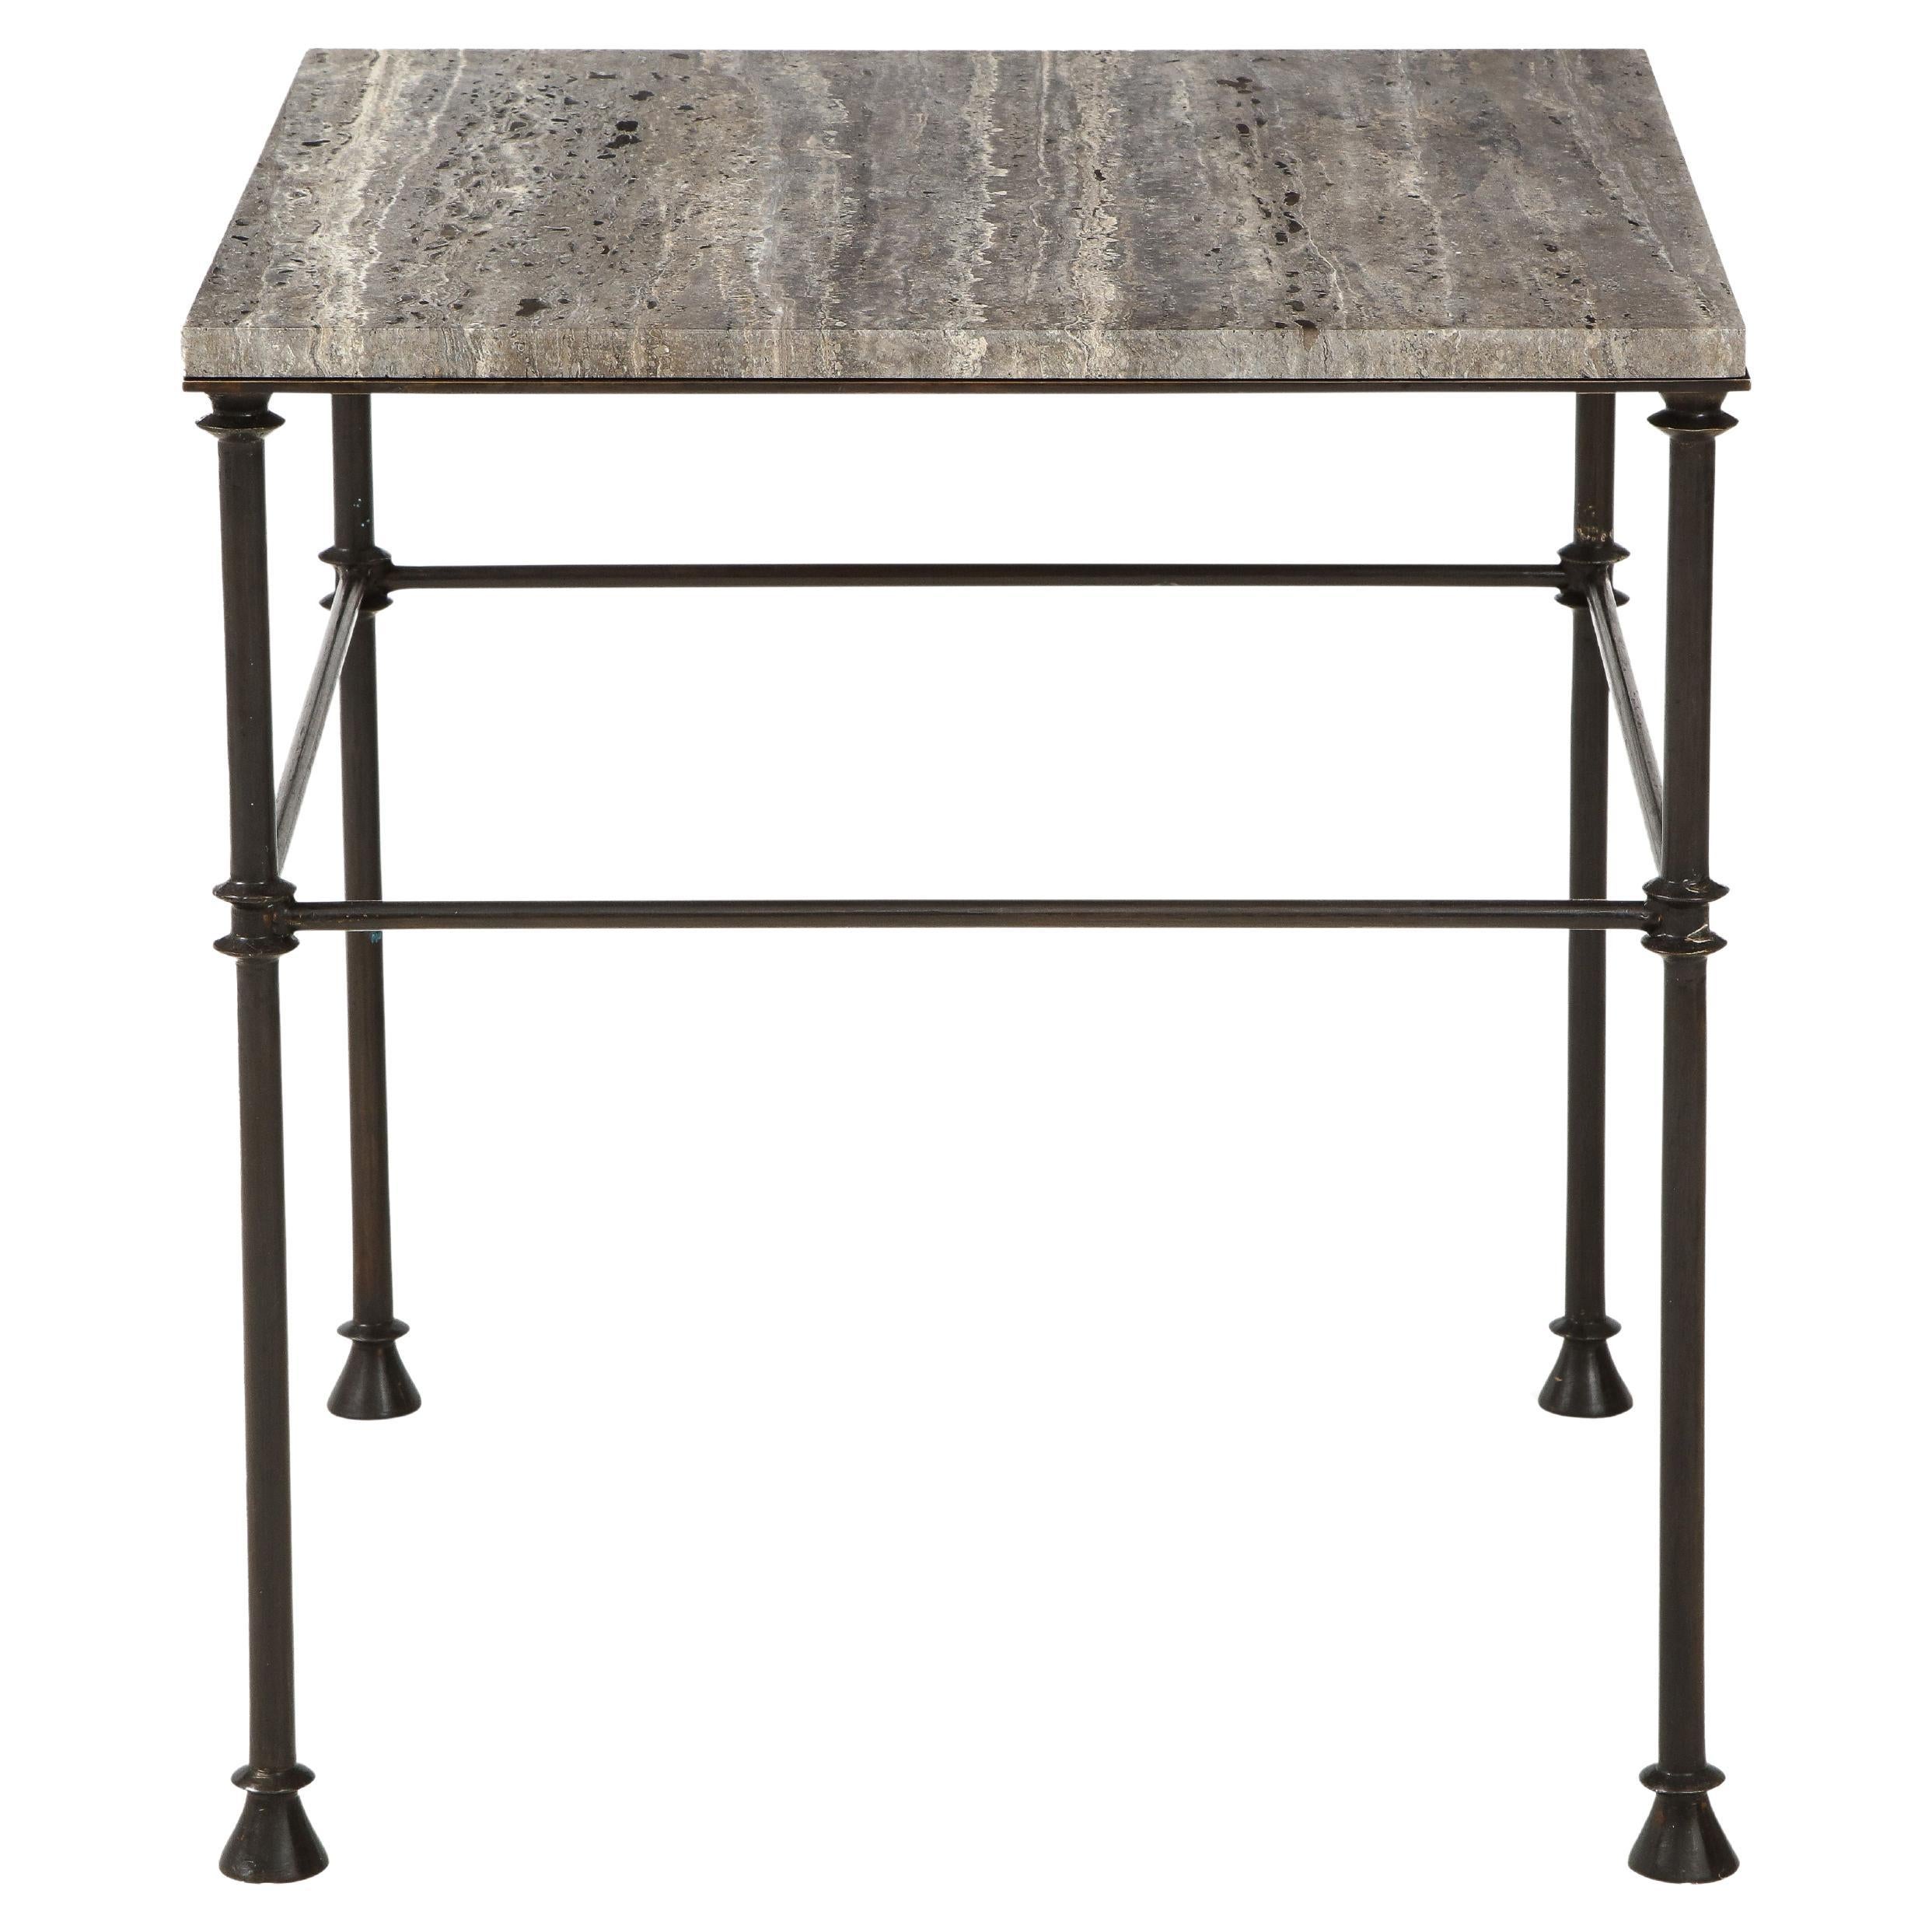 Table d'extrémité de canapé faite sur mesure, pieds en bronze et plateau en travertin de couleur ocan bleu